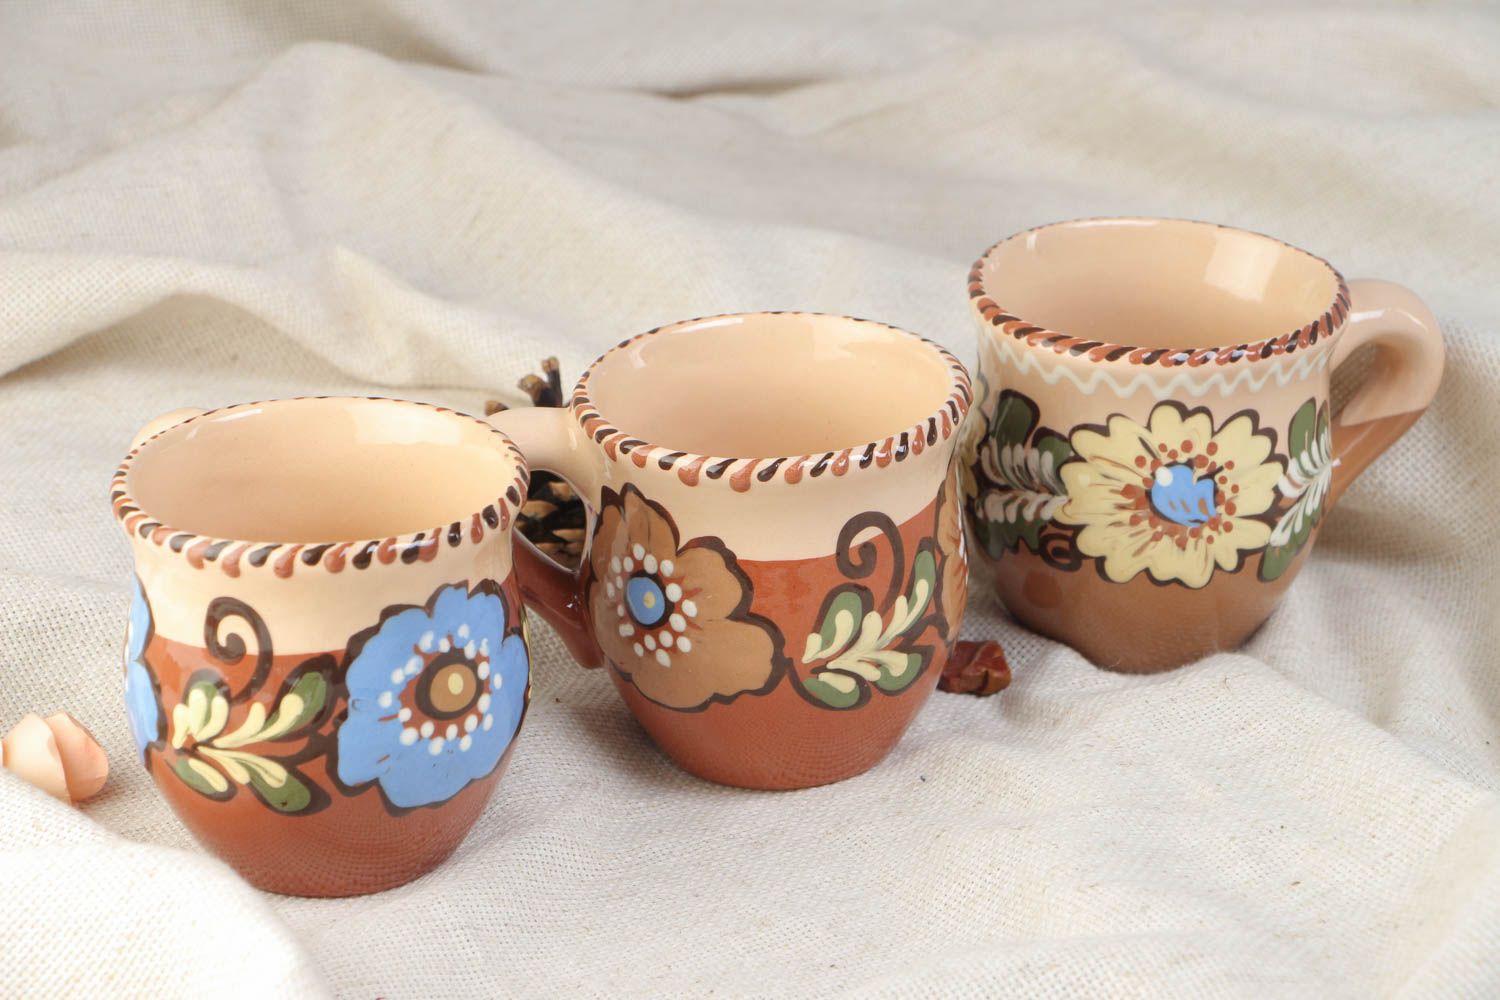 Juego de tazas artesanales de cerámica pintadas con barniz multicolor 3 piezas por 250 ml foto 1